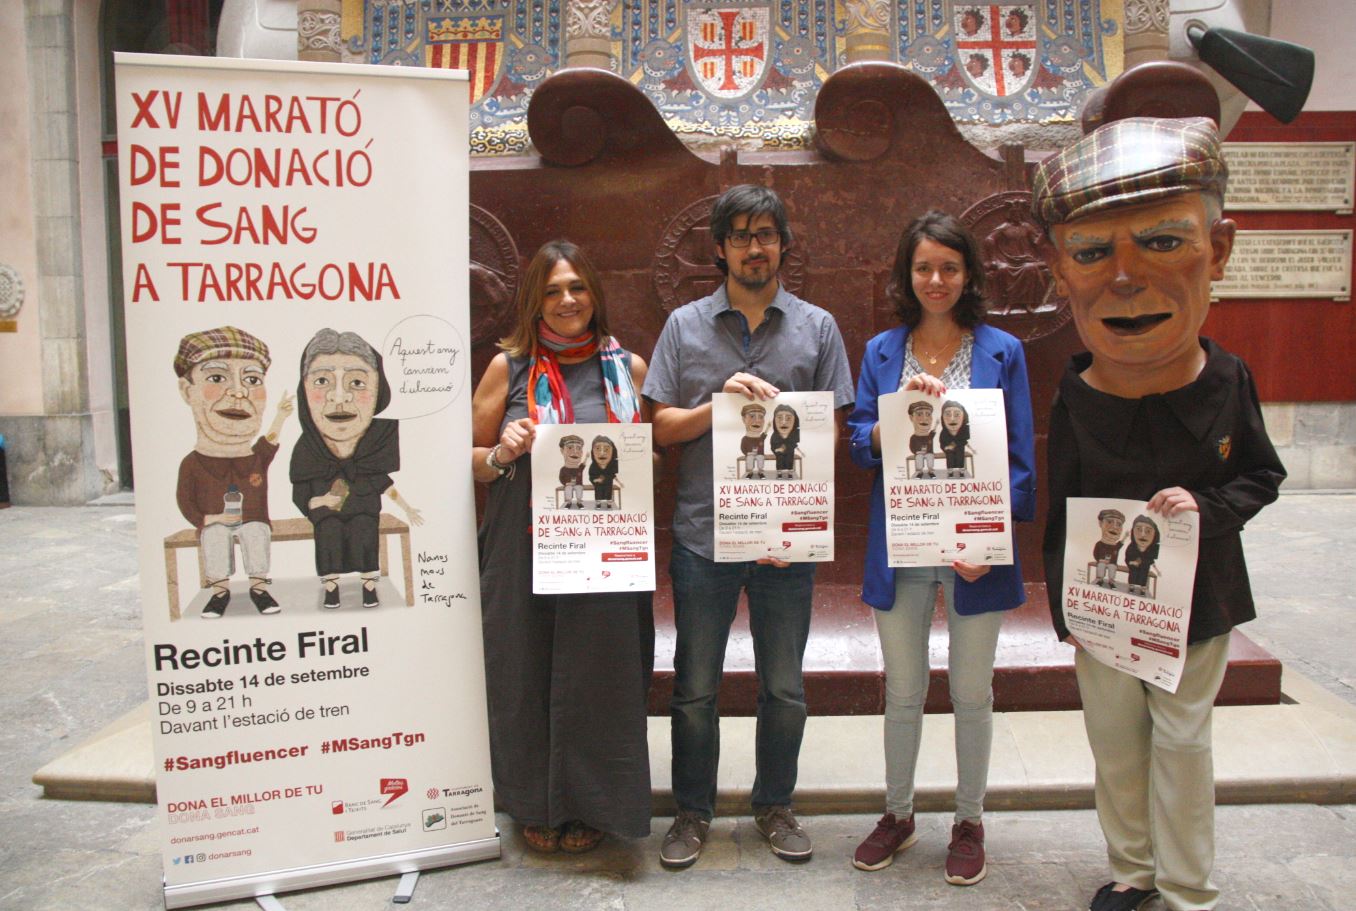 Se celebrarà el 14 de setembre al recinte firal del Palau de Congressos enlloc del Teatre Tarragona, tancat per obres